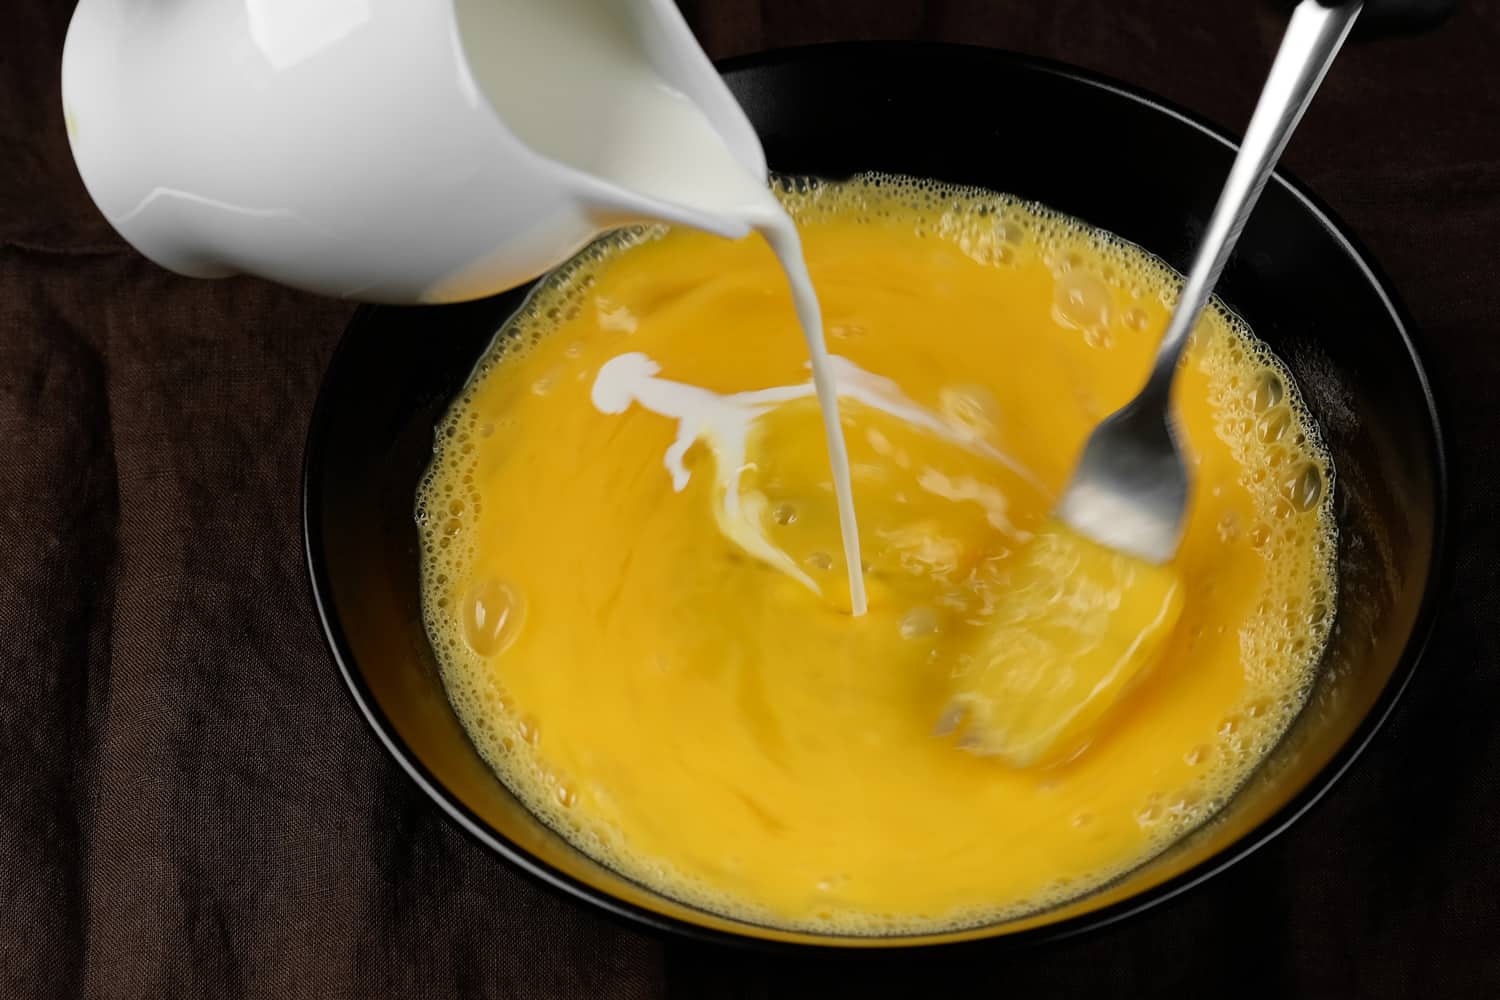 用叉子倒牛奶和搅拌鸡蛋。炒鸡蛋，煎蛋卷